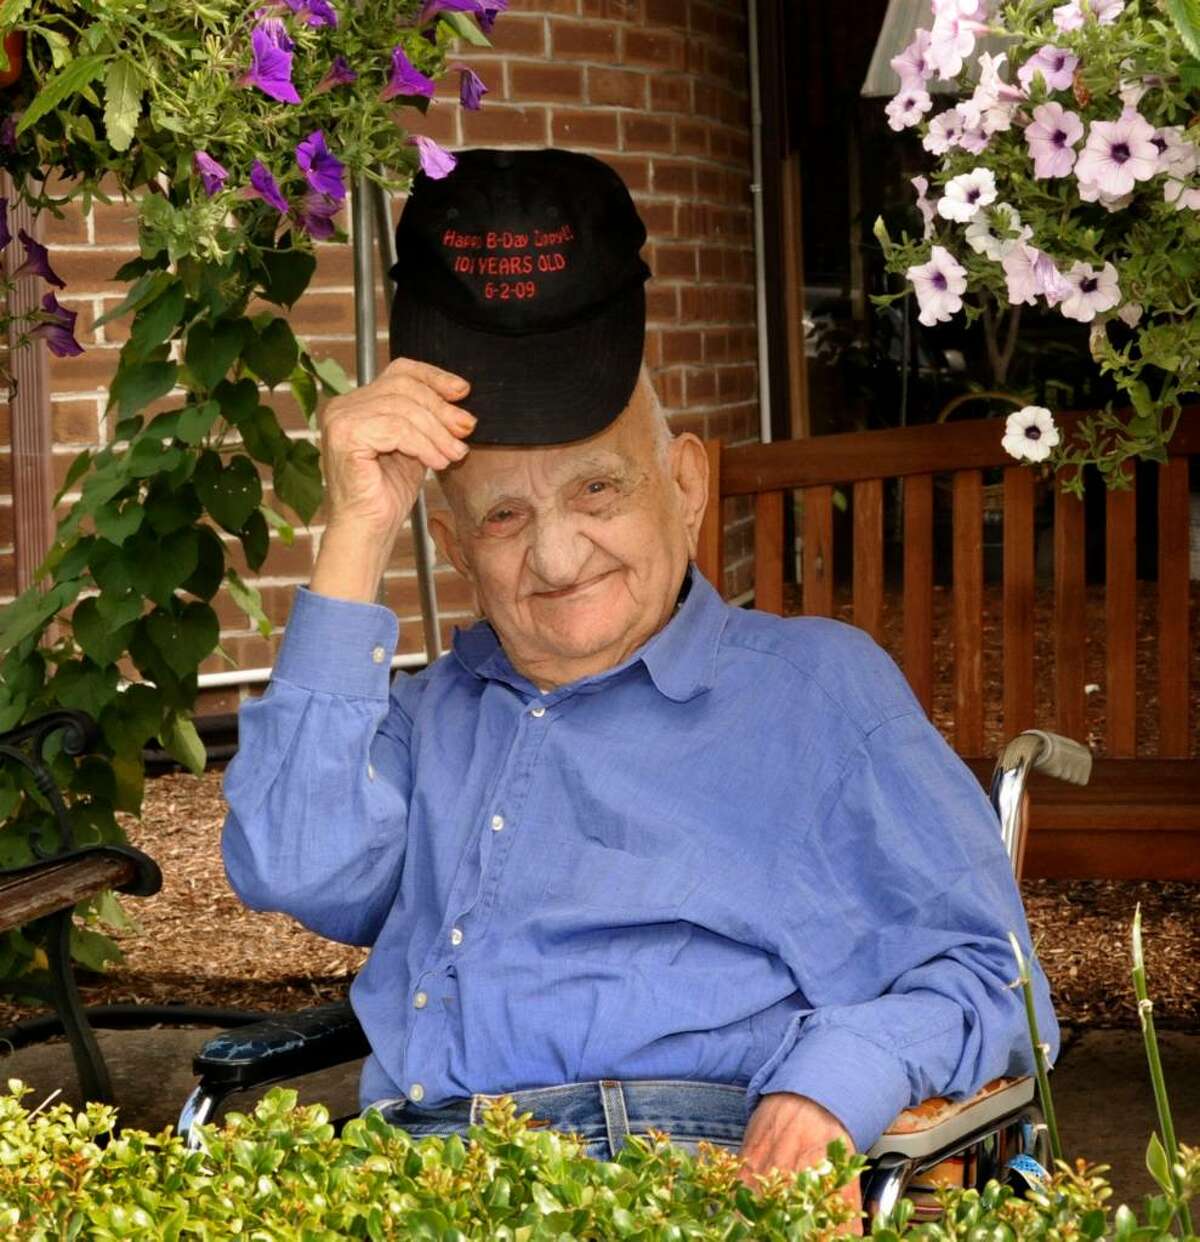 Genaro Zipparo, who turned 101 this June, outside Danbury HealthCare on thursday.